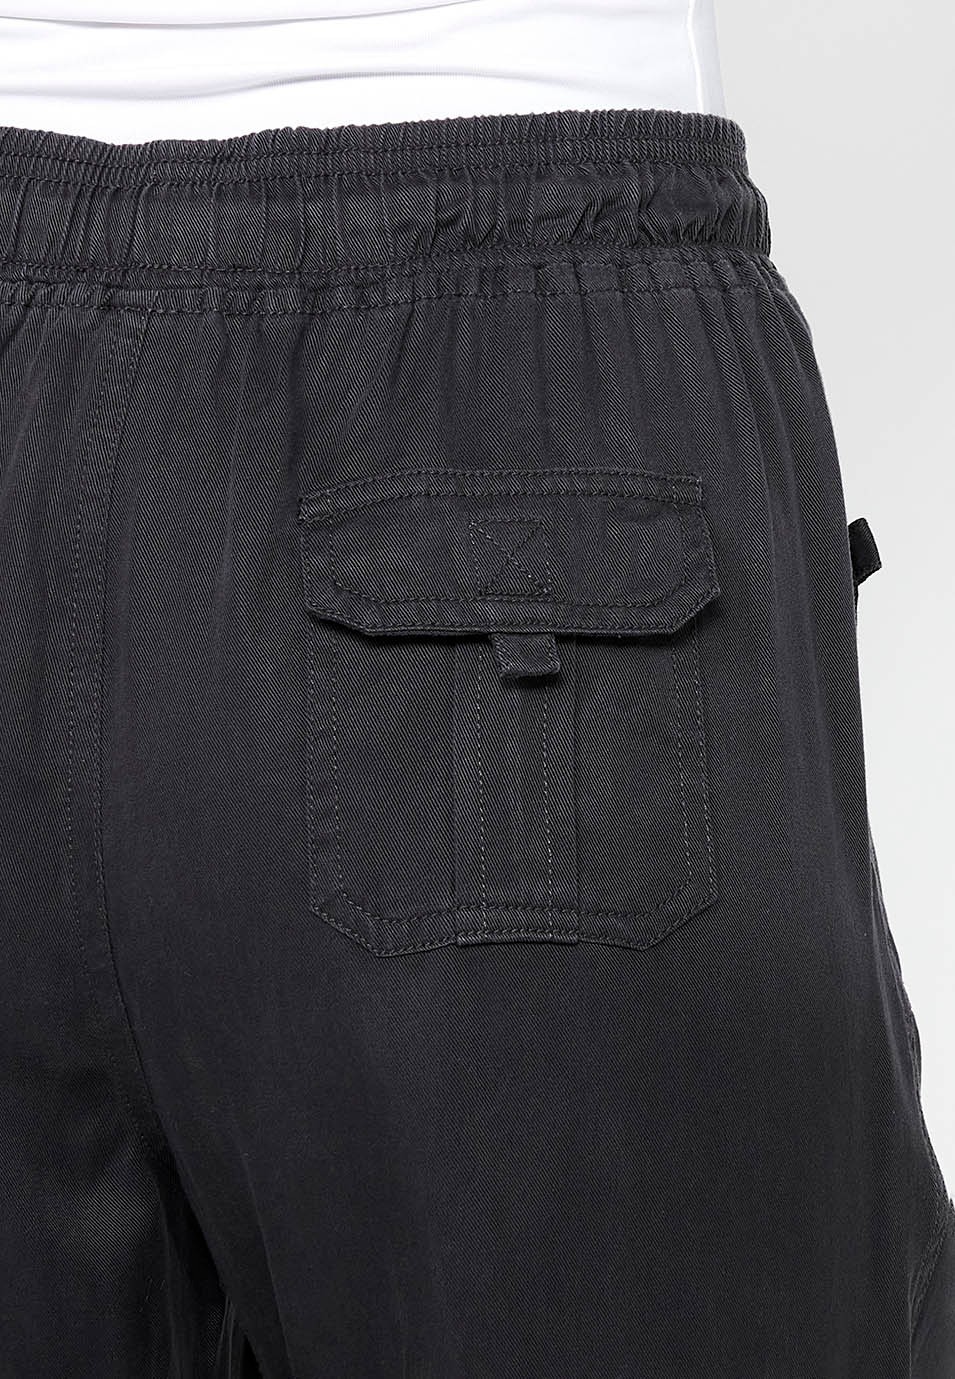 Pantalón largo jogger con Acabado rizado y Cintura engomada con Cuatro bolsillos, dos traseros con solapa de Color Negro para Mujer 10